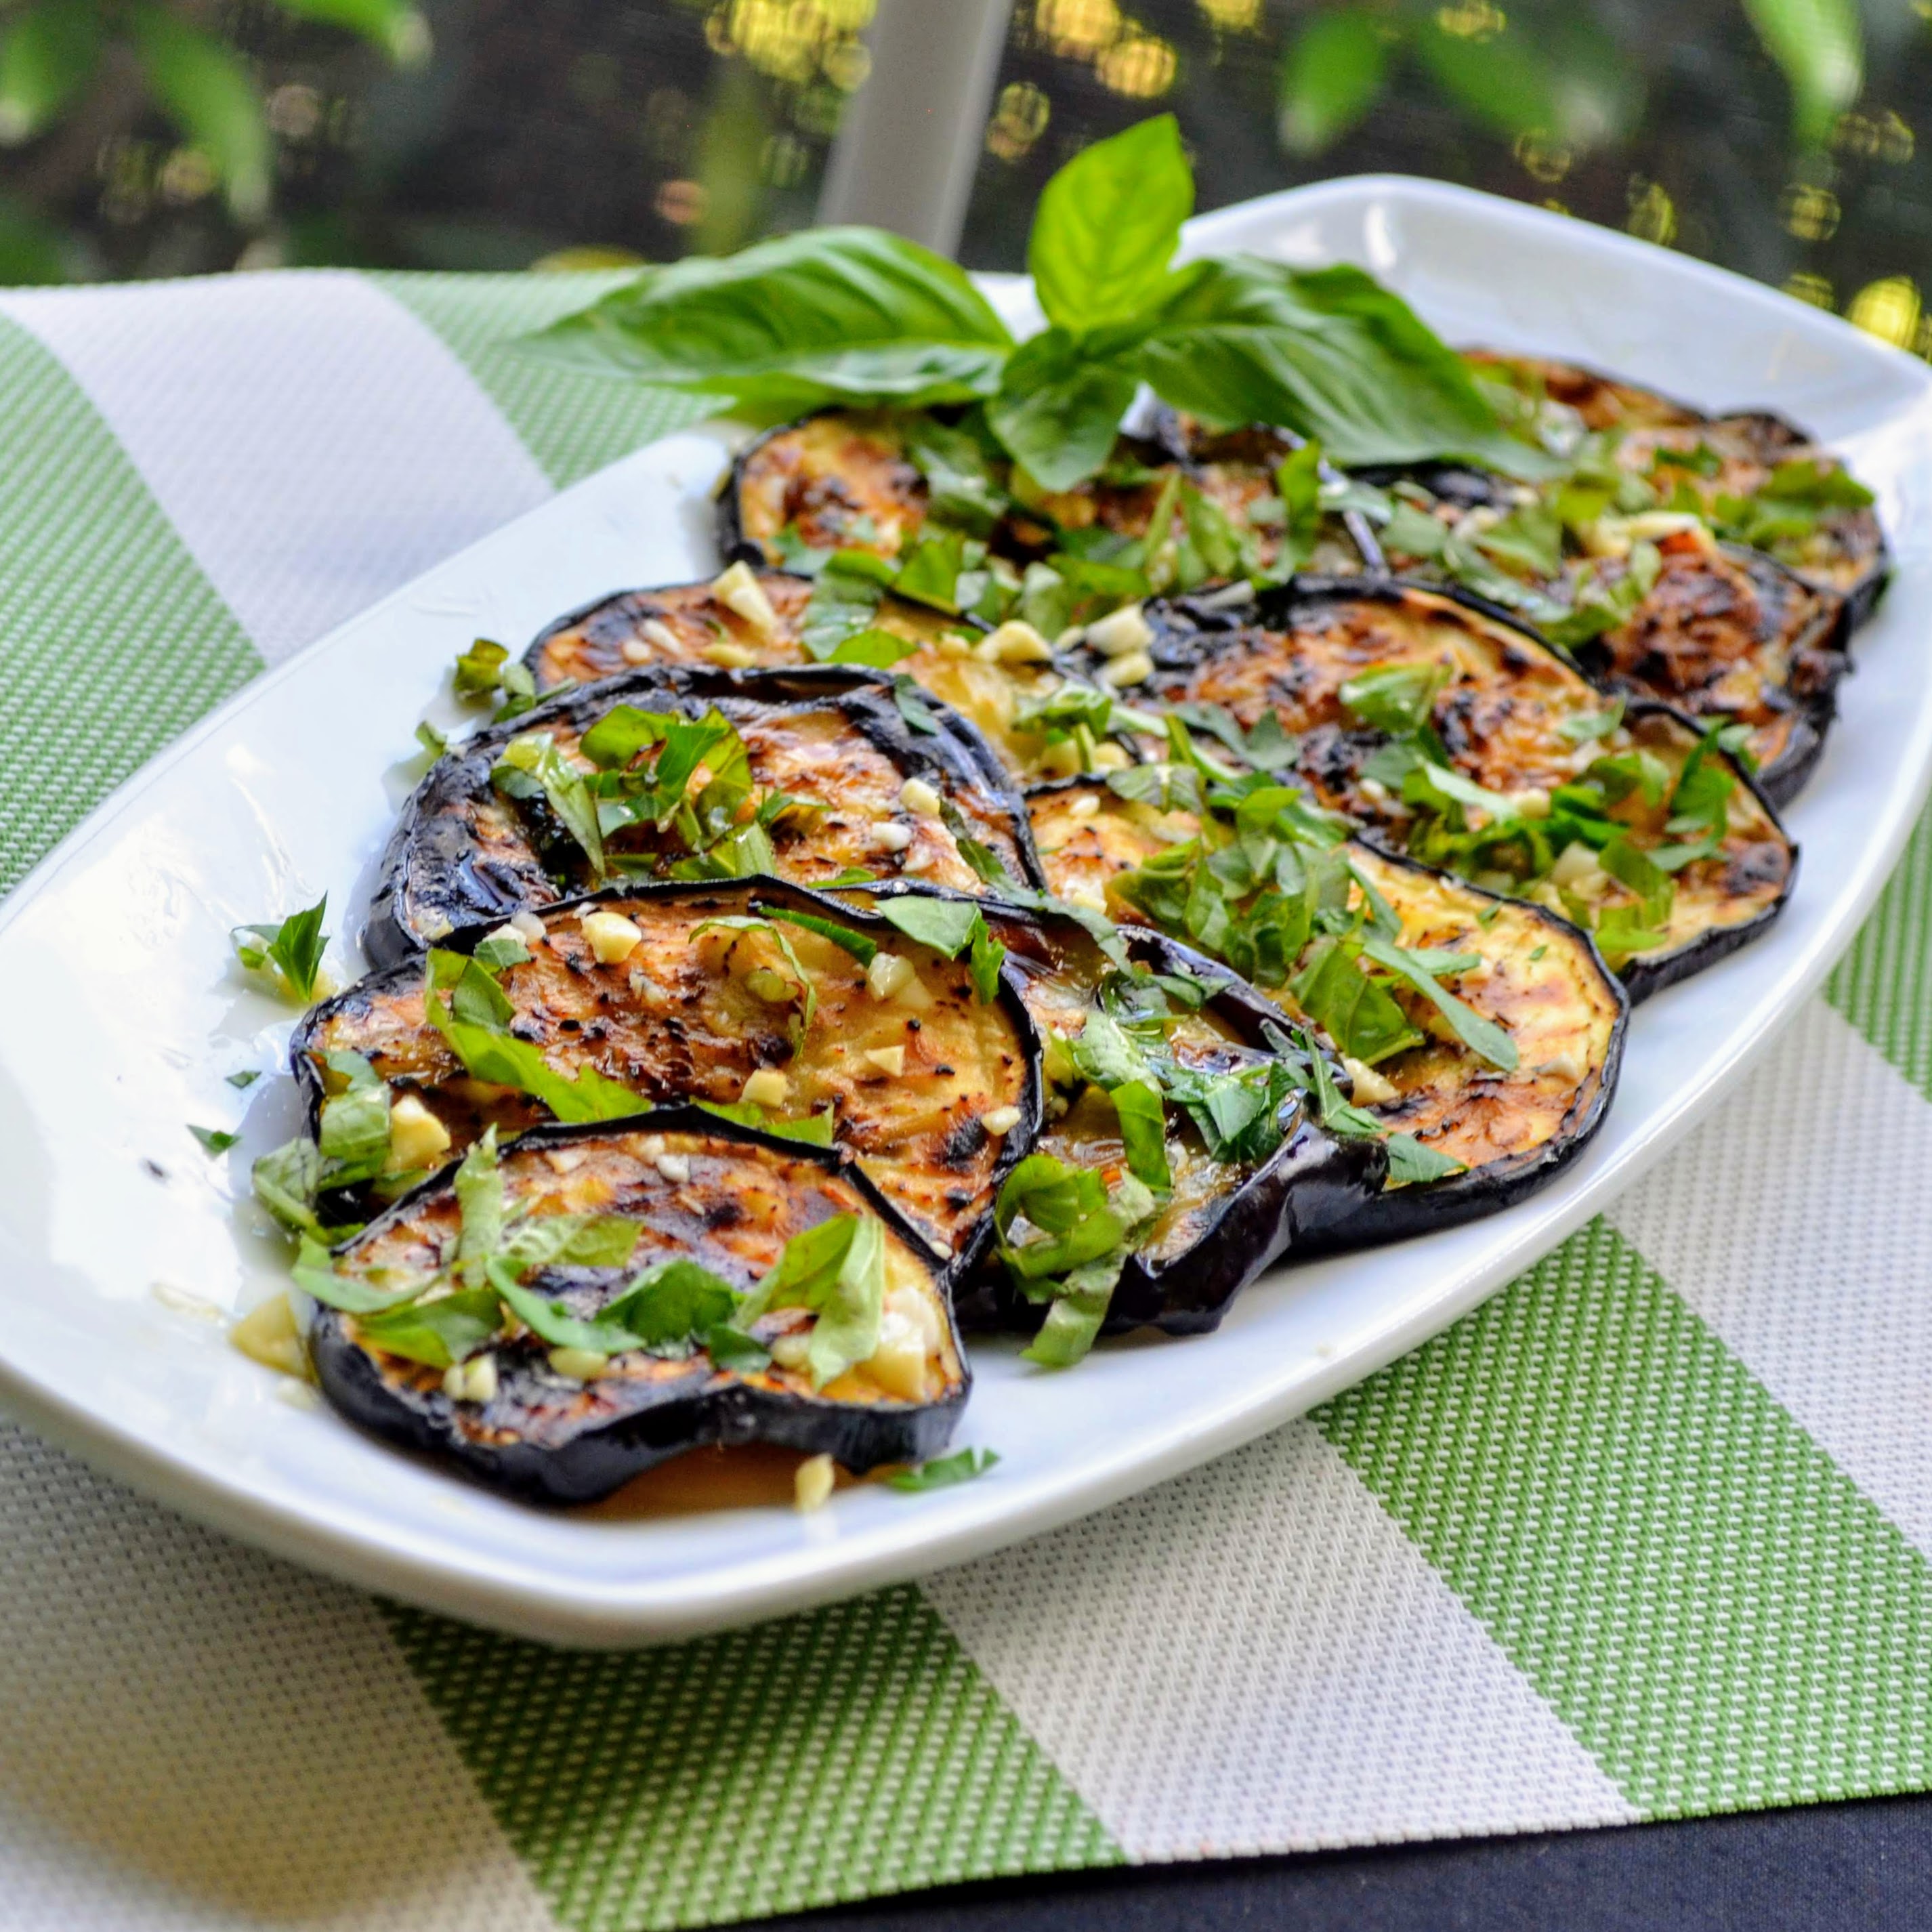 Italian Grilled Eggplant with Basil and Parsley (Melanzane Grigliate al Basilico e Prezzemolo)